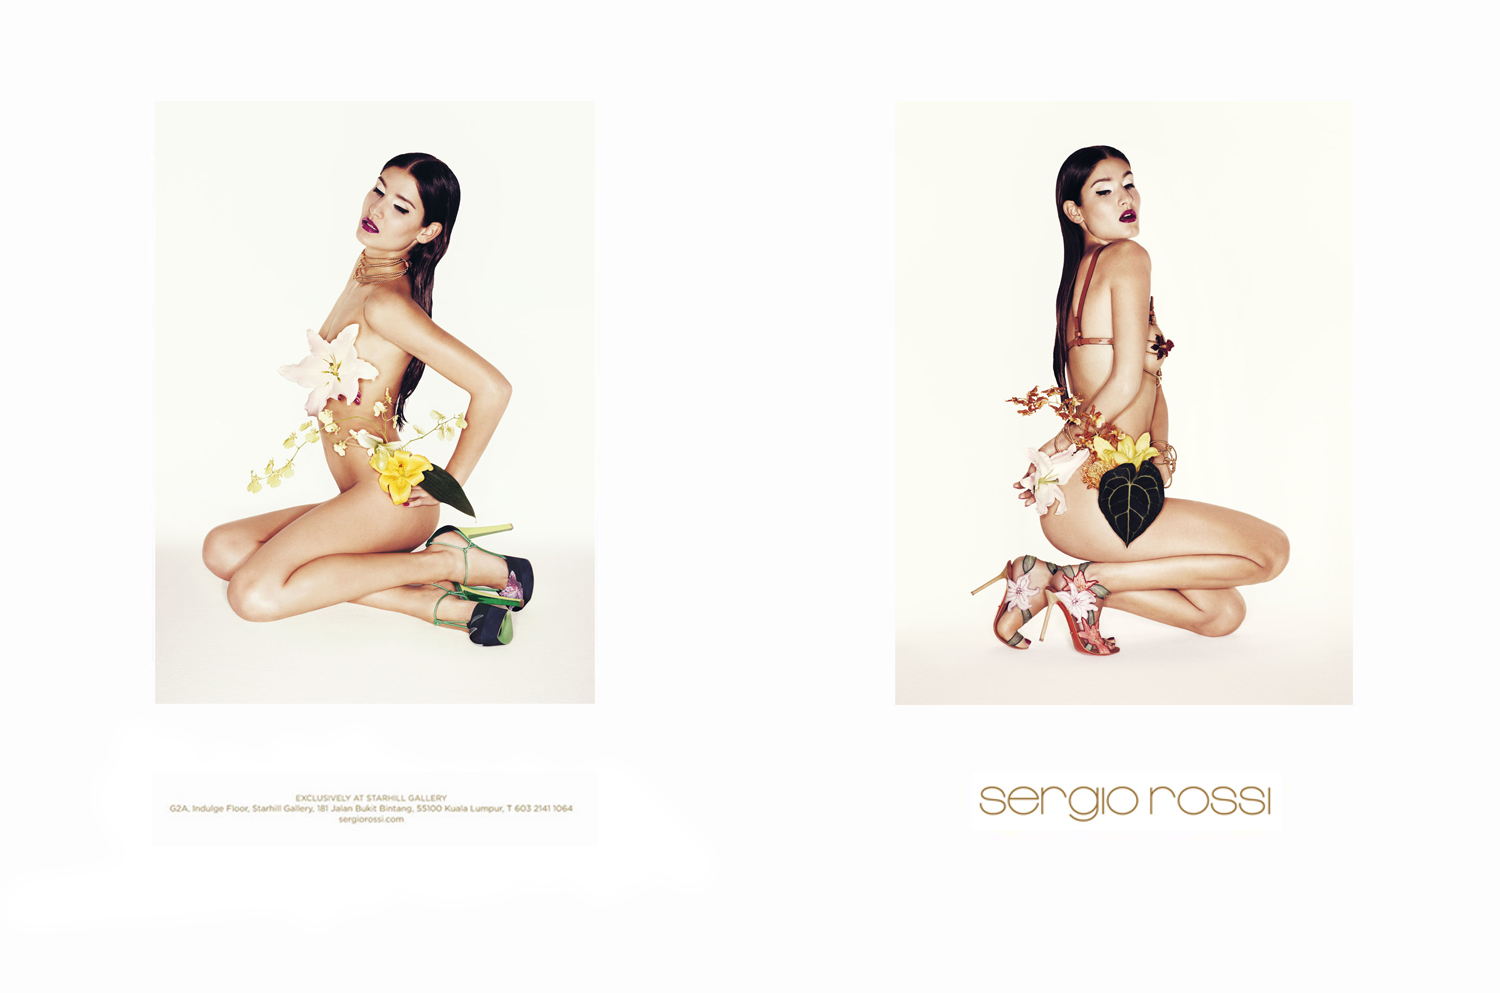 Sergio Rossi SS 2012 Campaign | Johan Sandberg | Sergio Rossi | Numerique Retouch Photo Retouching Studio